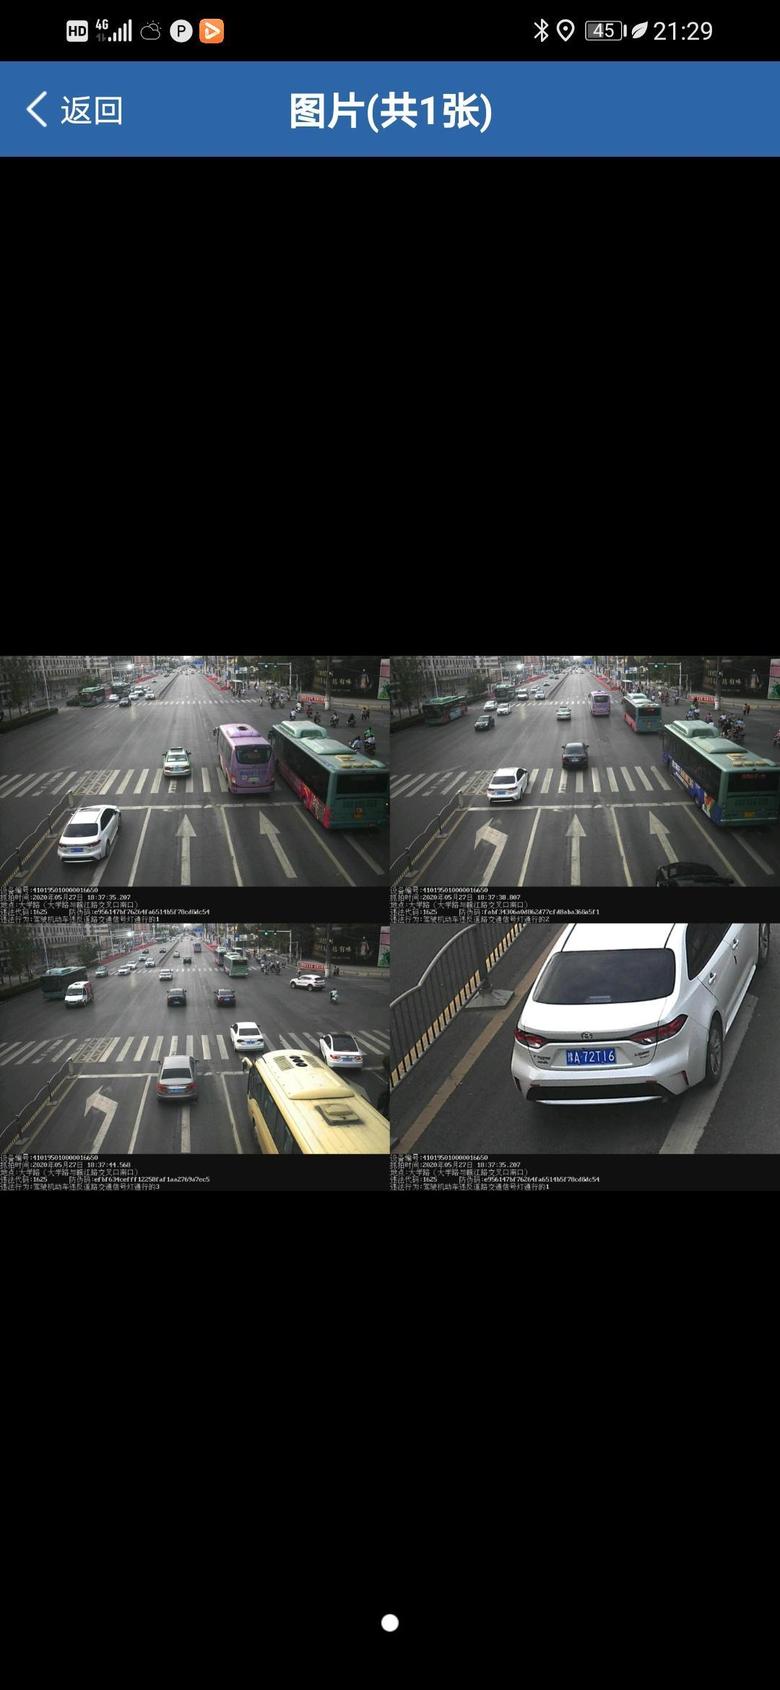 雷凌 左转道上的小白车，直行绿灯时直行了，不是应该按未按道路指示标识处罚吗